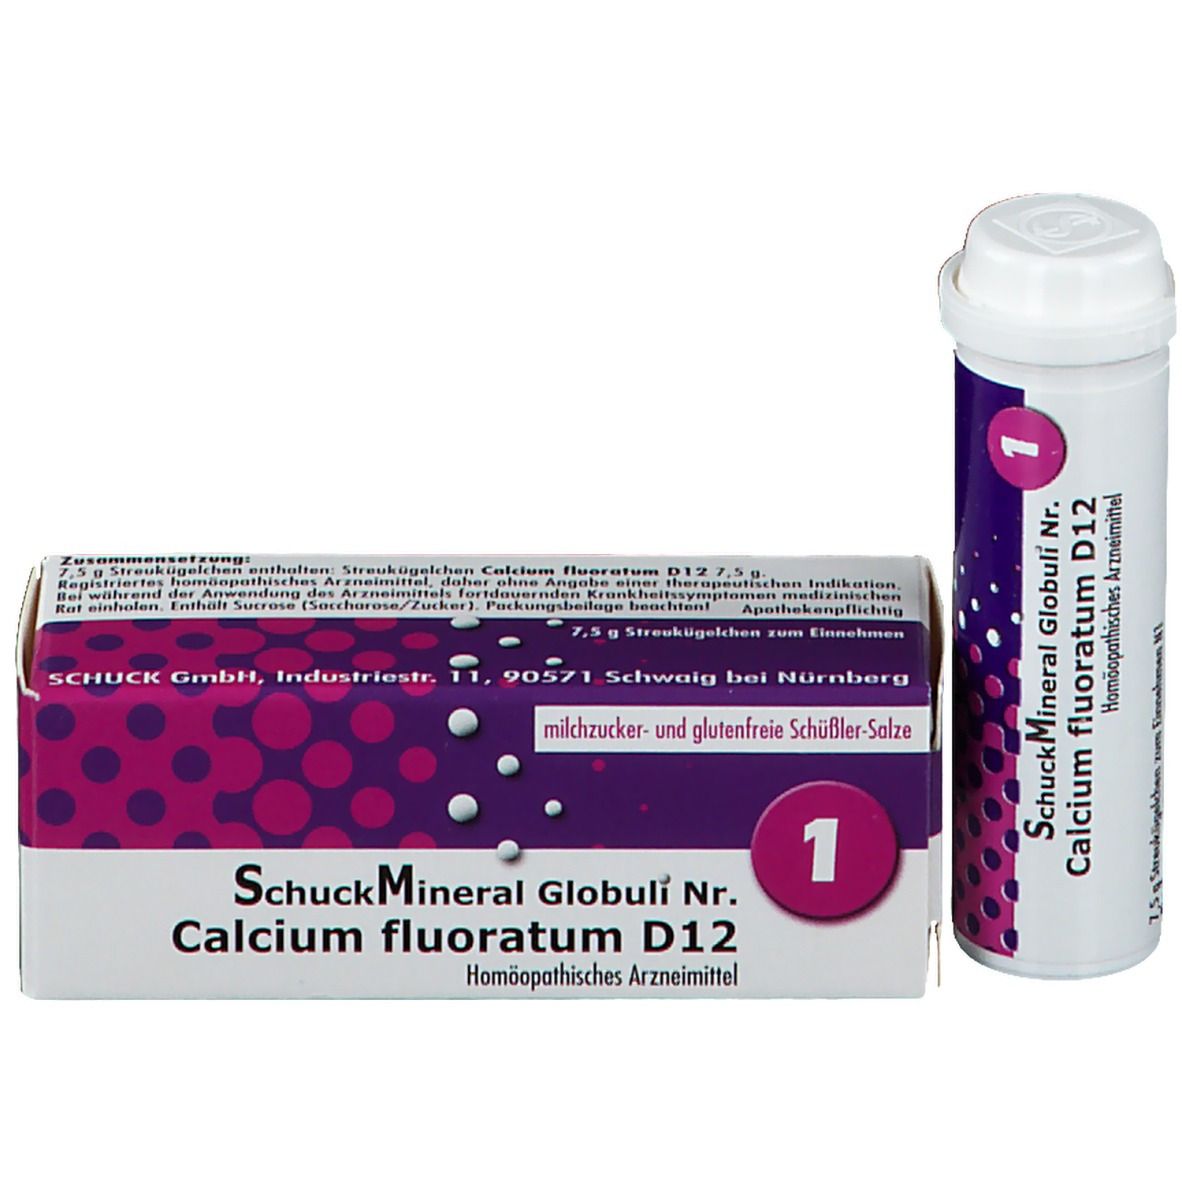 SchuckMineral Globuli Nr. 1 Calcium fluoratum D12